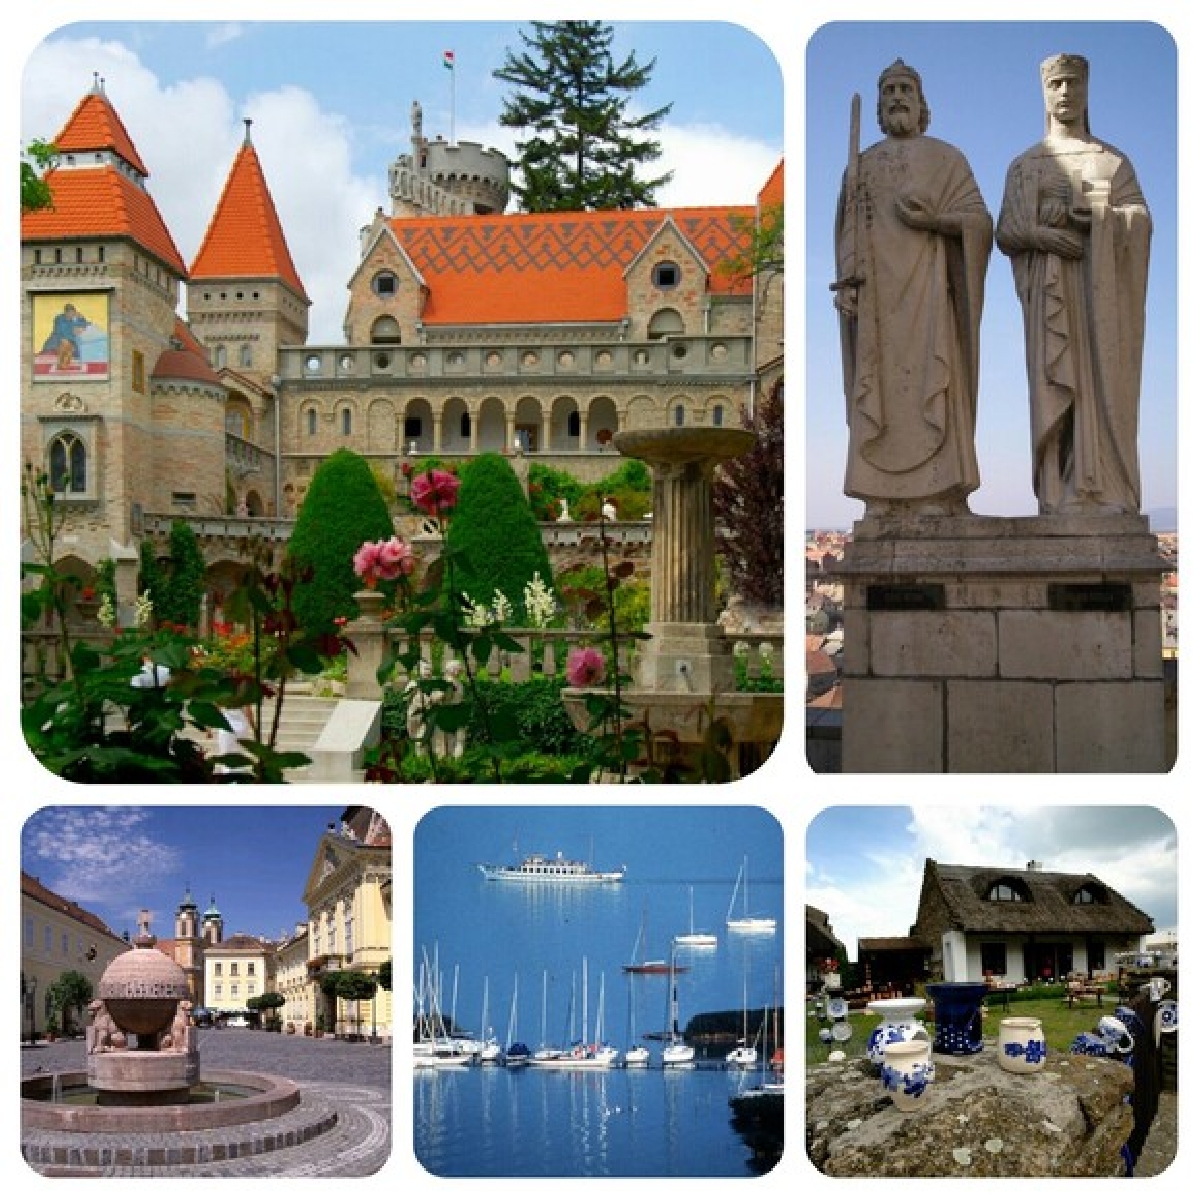 Замок пламенной любви «Боривар», города королей и королев, а также «Венгерское море» — озеро Балатон